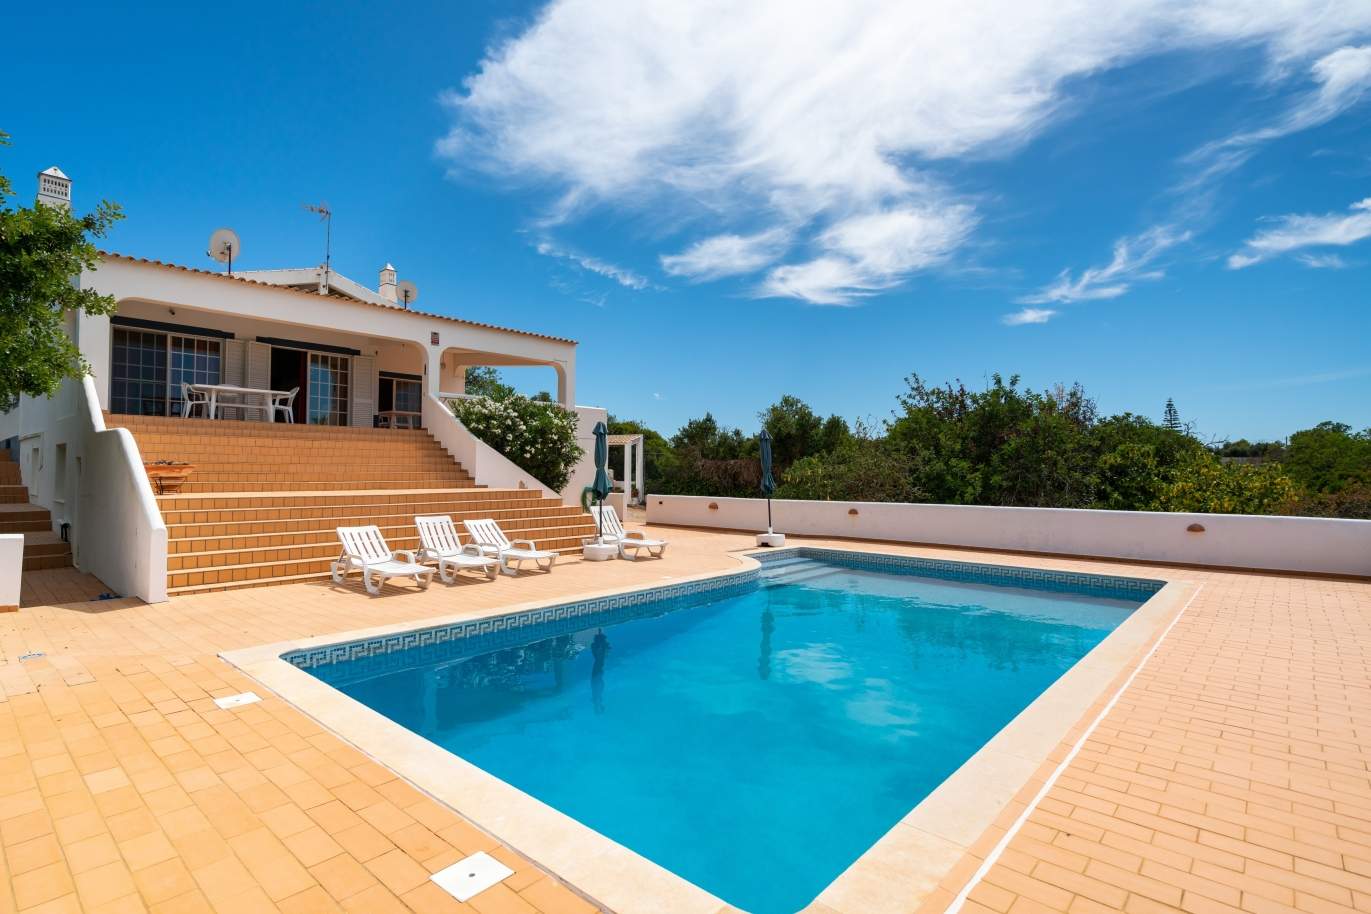 Moradia V4 com piscina, para venda, Quelfes, Olhão, Algarve_144160